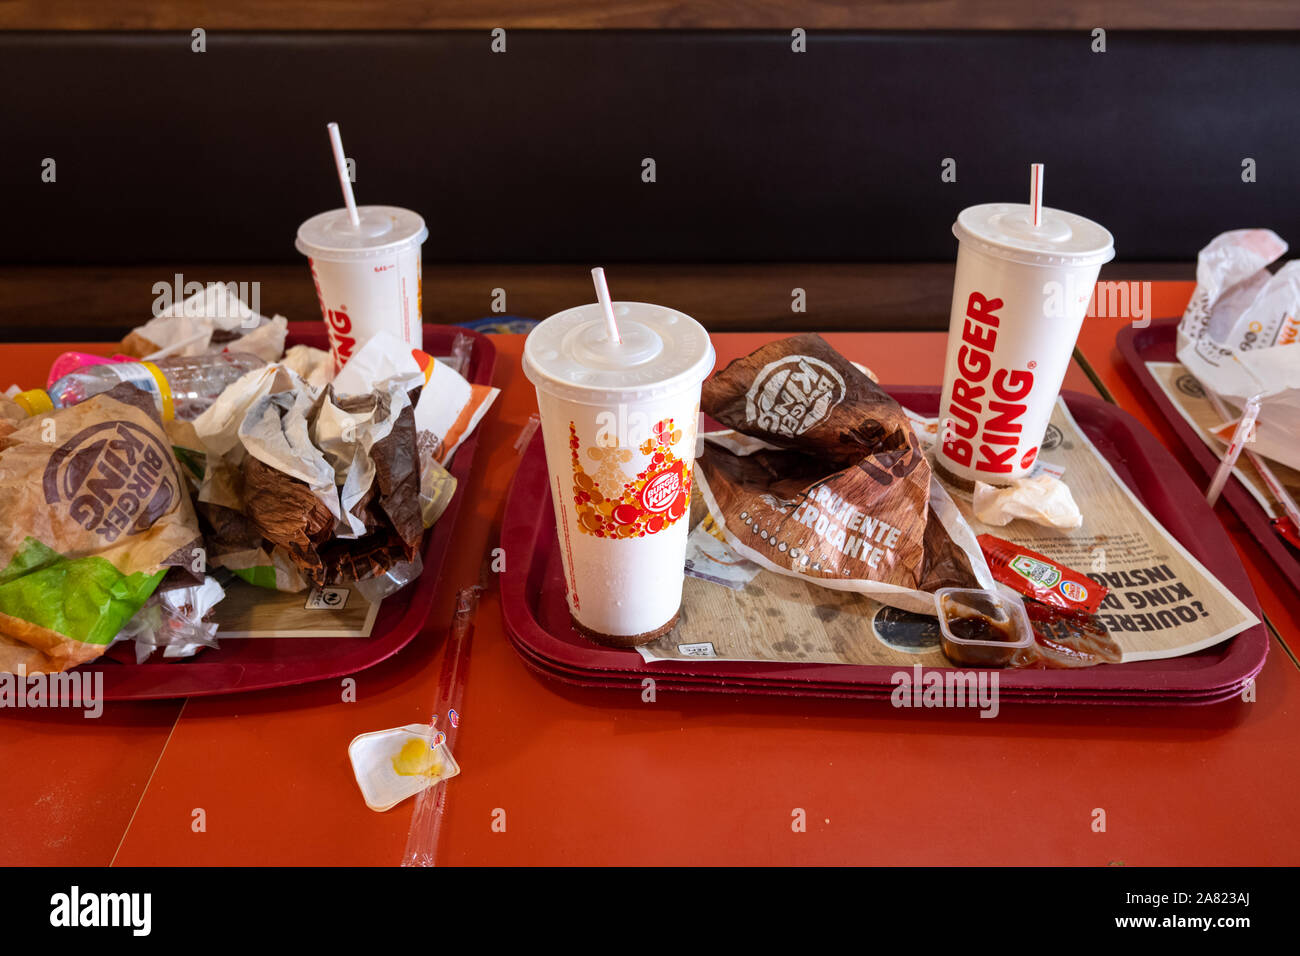 Valencia, Spanien - 1. November 2019: Burger King Restaurant Abfälle, die nicht recycelt werden. Stockfoto